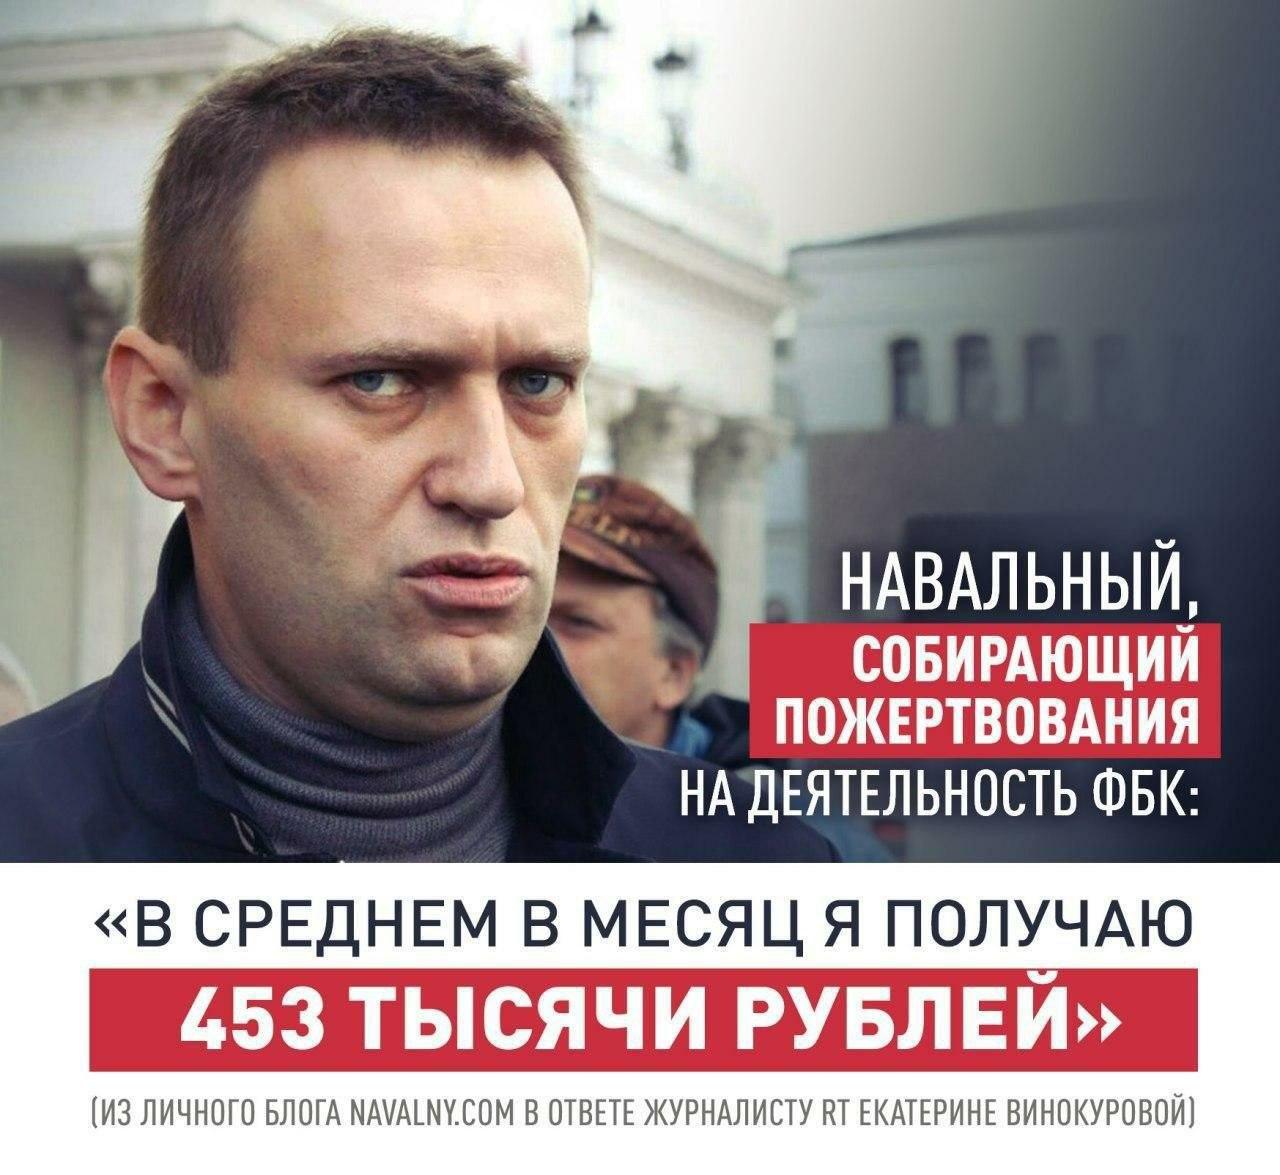 Сколько лет будет сидеть навальный